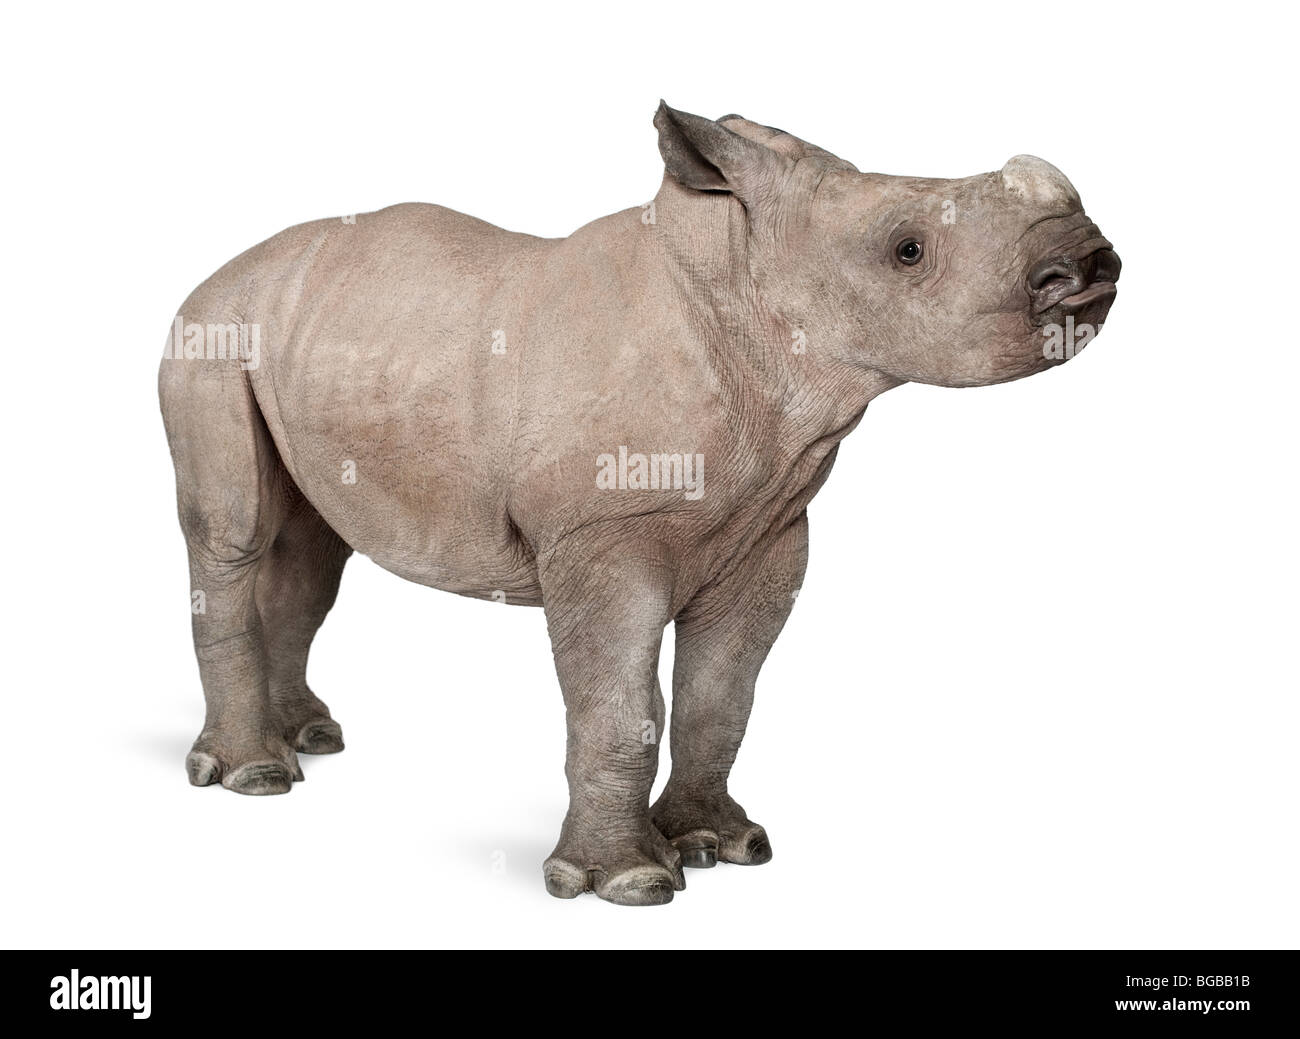 Rinoceronte blanco joven o labios cuadrados, rinoceronte Ceratotherium simum, 2 meses, delante de un fondo blanco. Foto de stock